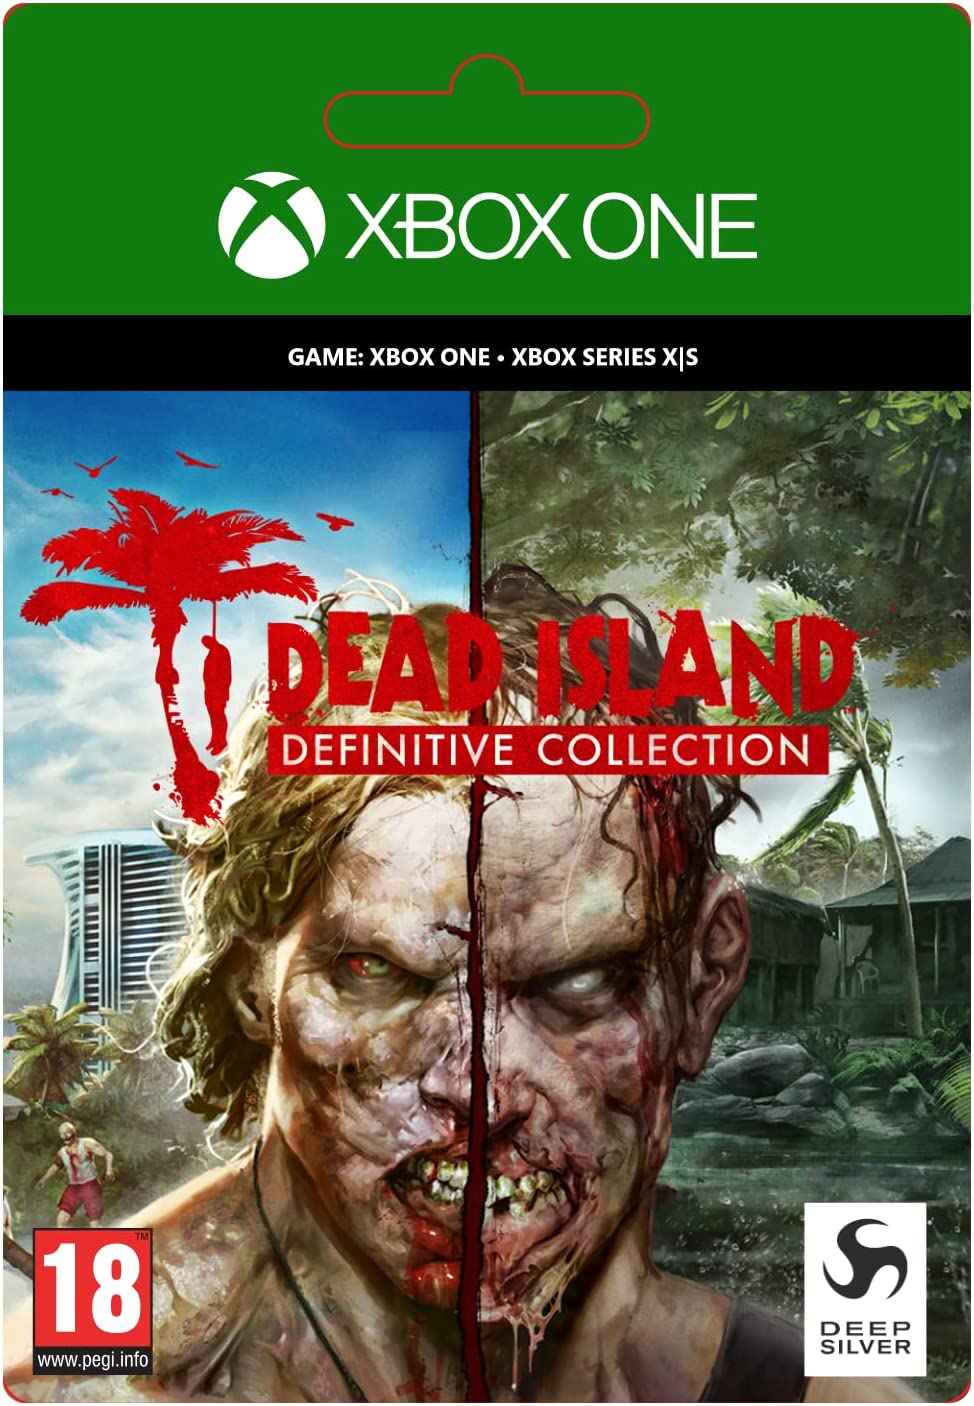 Dead Island Riptide Definitive Edition EU XBOX One CD Key